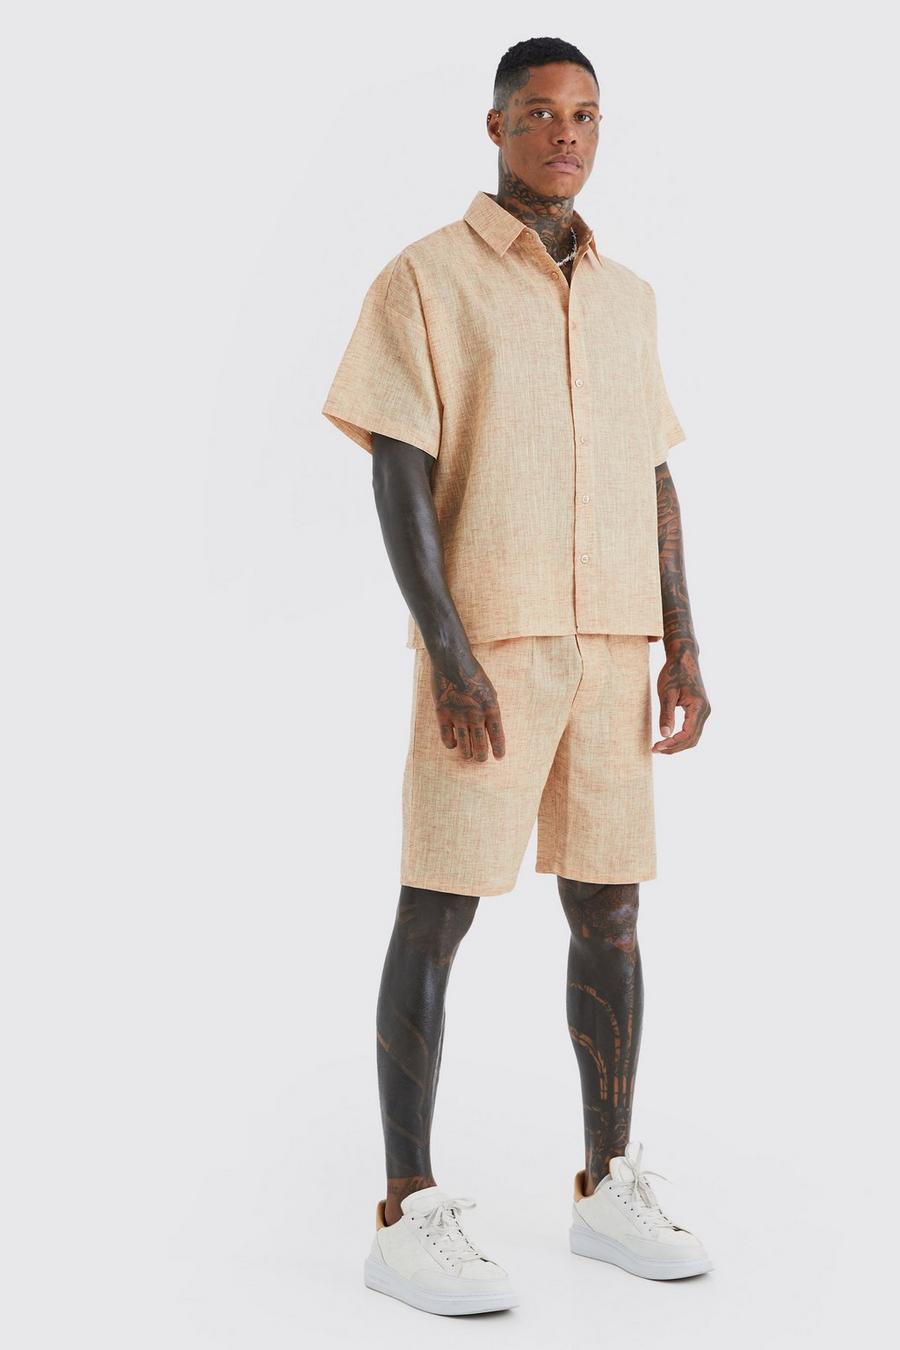 Pantalón corto y camisa recta efecto lino de manga corta, Chocolate